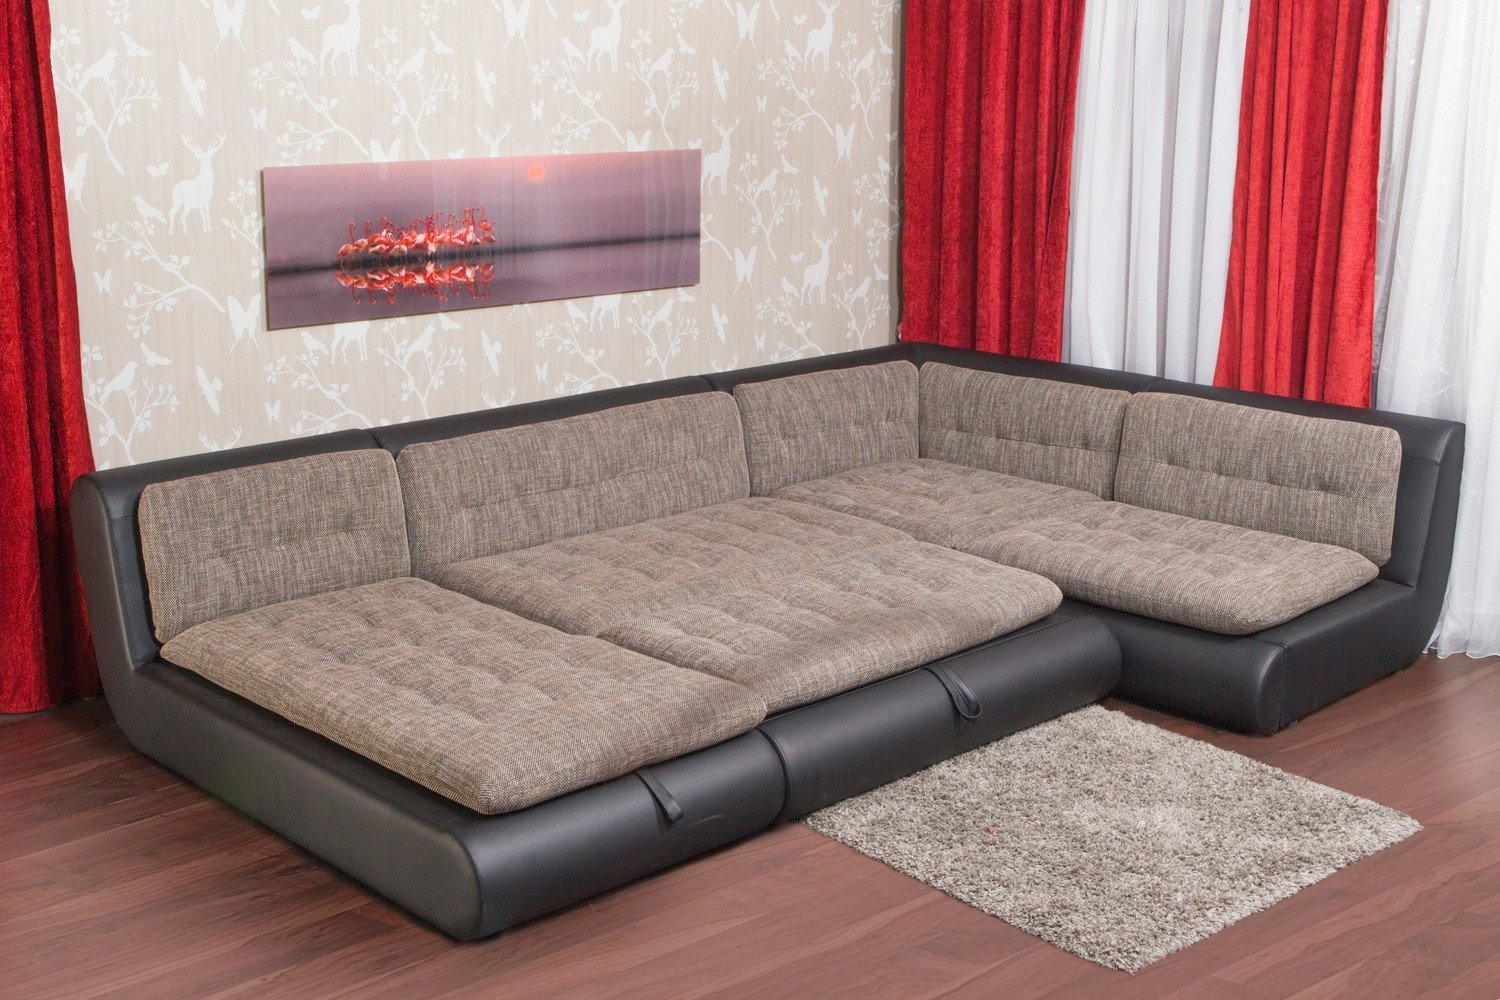 Как поставить угловой диван в прямоугольную комнату. Изображение 2